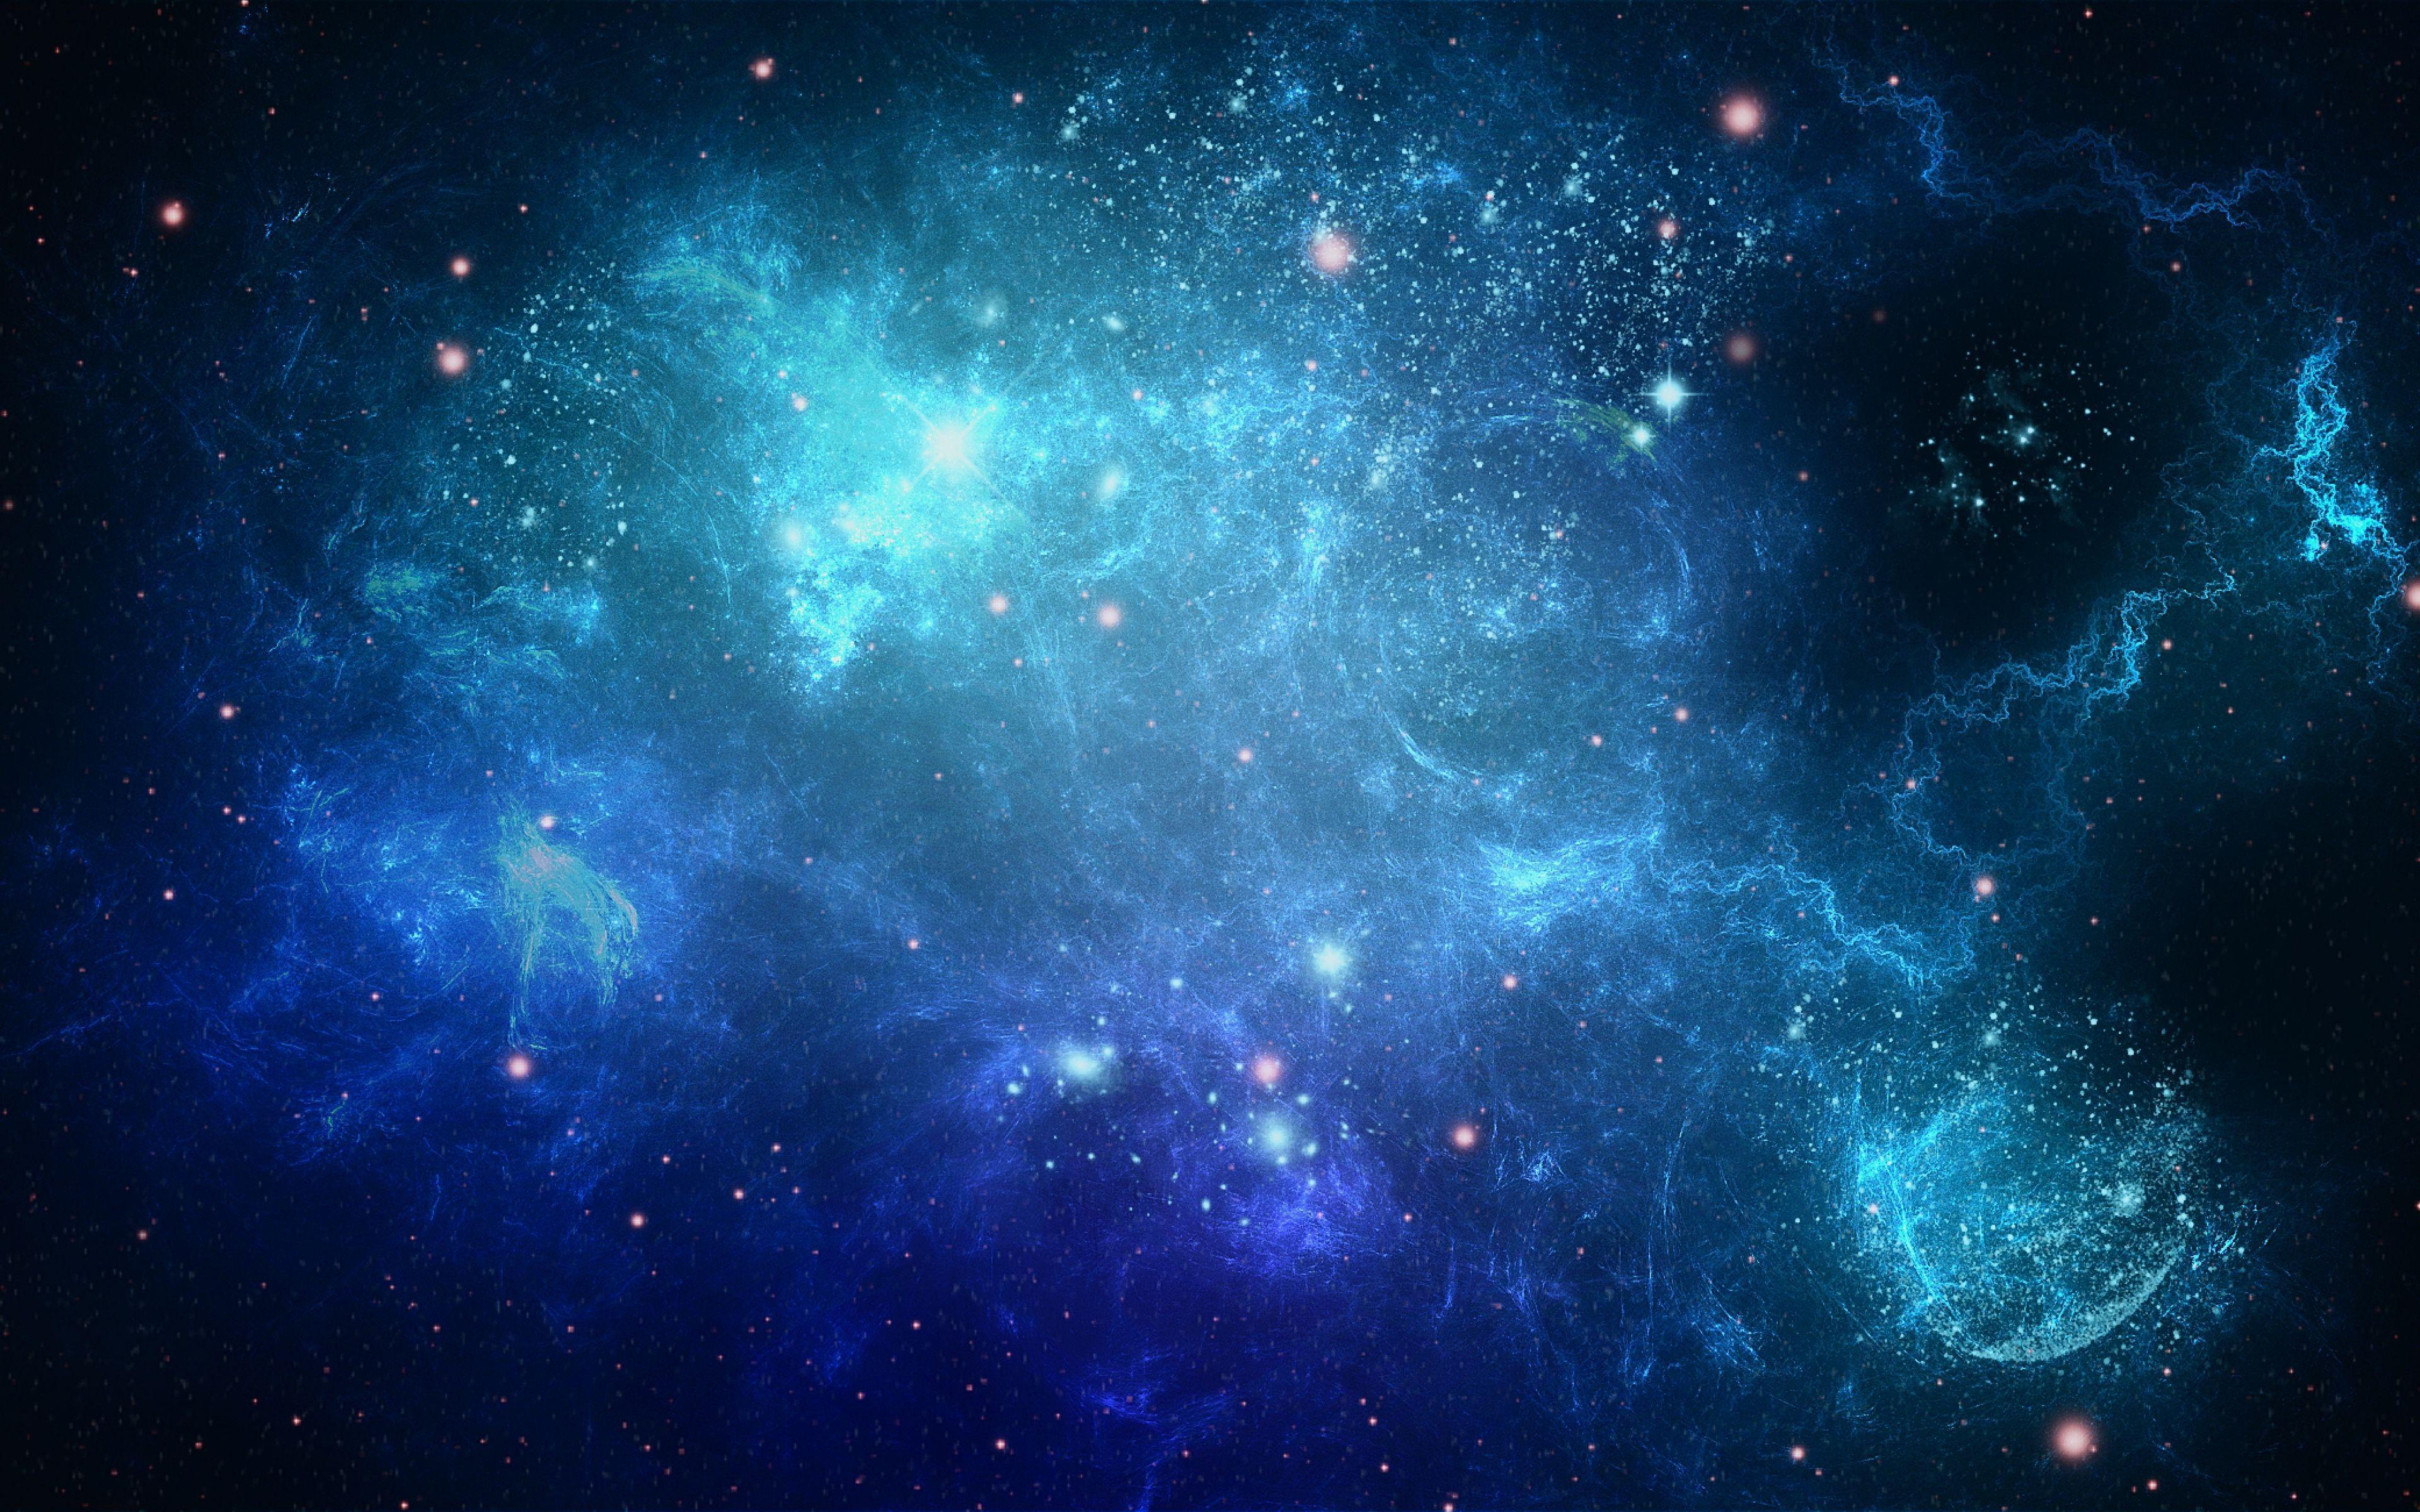 Nghệ thuật thiên nhiên được tuyệt đẹp thể hiện trong hình nền Wallpaper galaxy blue với sắc xanh tinh tế và lấp lánh của các sao tỏa sáng. Hãy cho phép bức hình này mang đến sự trẻ trung và thư giãn cho điện thoại của bạn bằng cách nhấp chuột vào nó để tận hưởng sự kỳ diệu của vũ trụ.